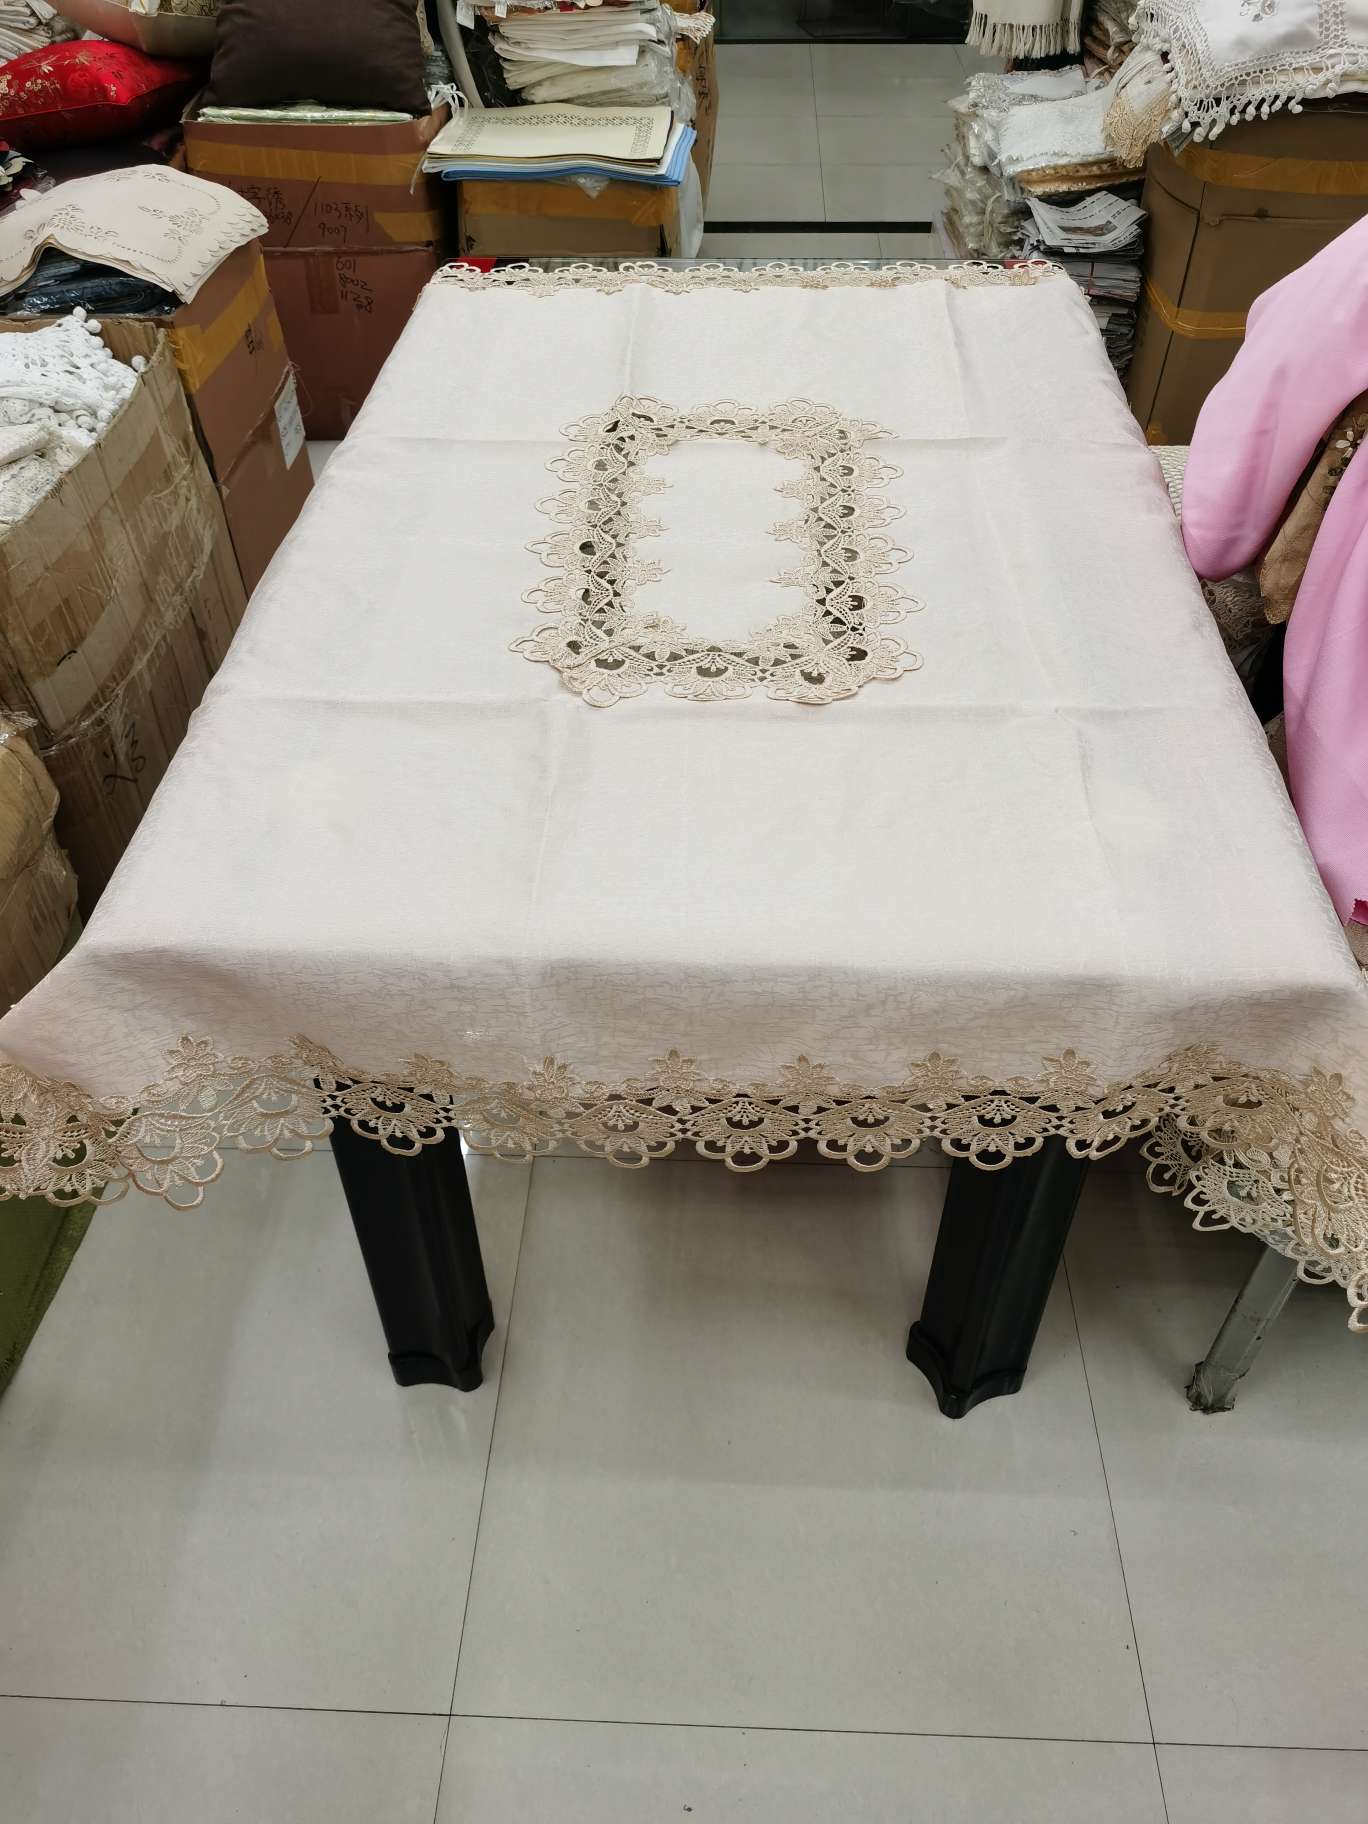 水溶花边提花贡缎桌布。尺寸120×150。产品图